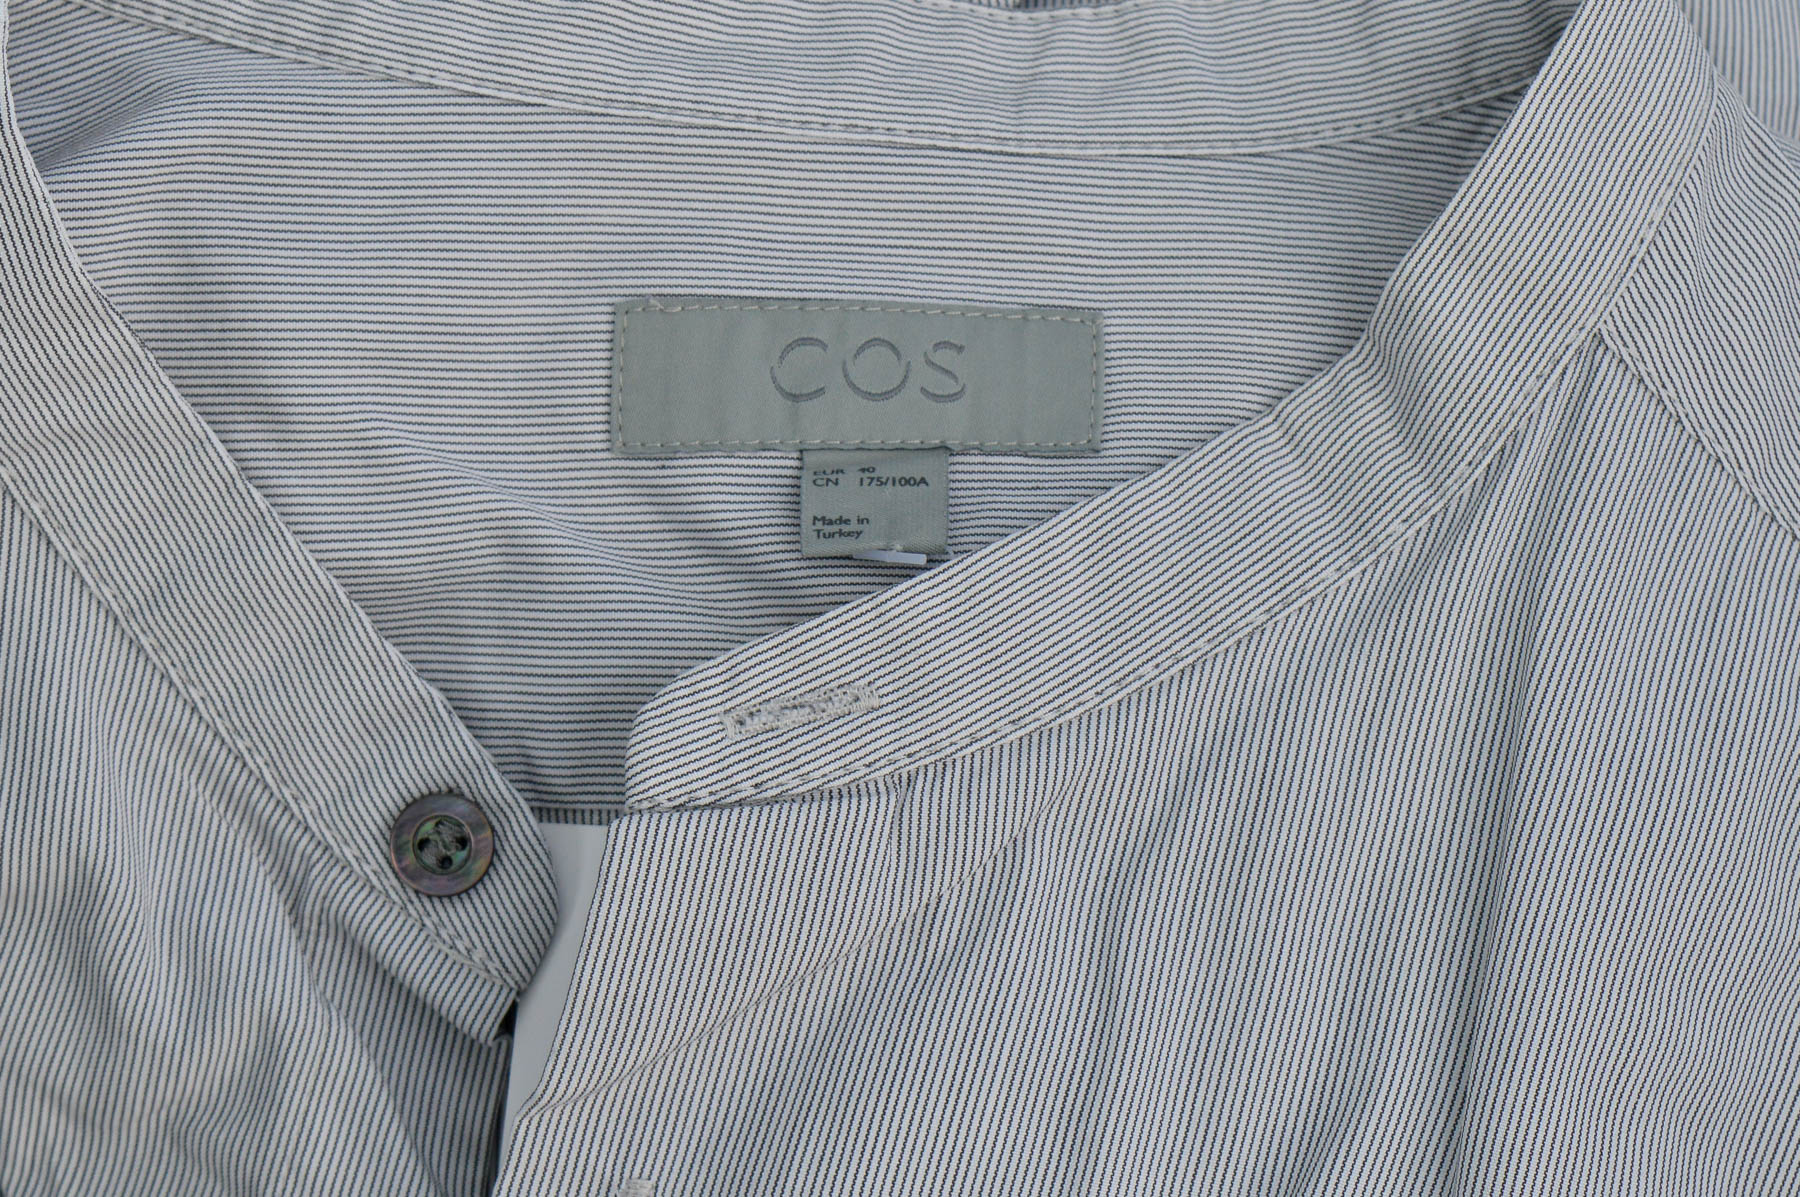 Ανδρικό πουκάμισο - COS - 2